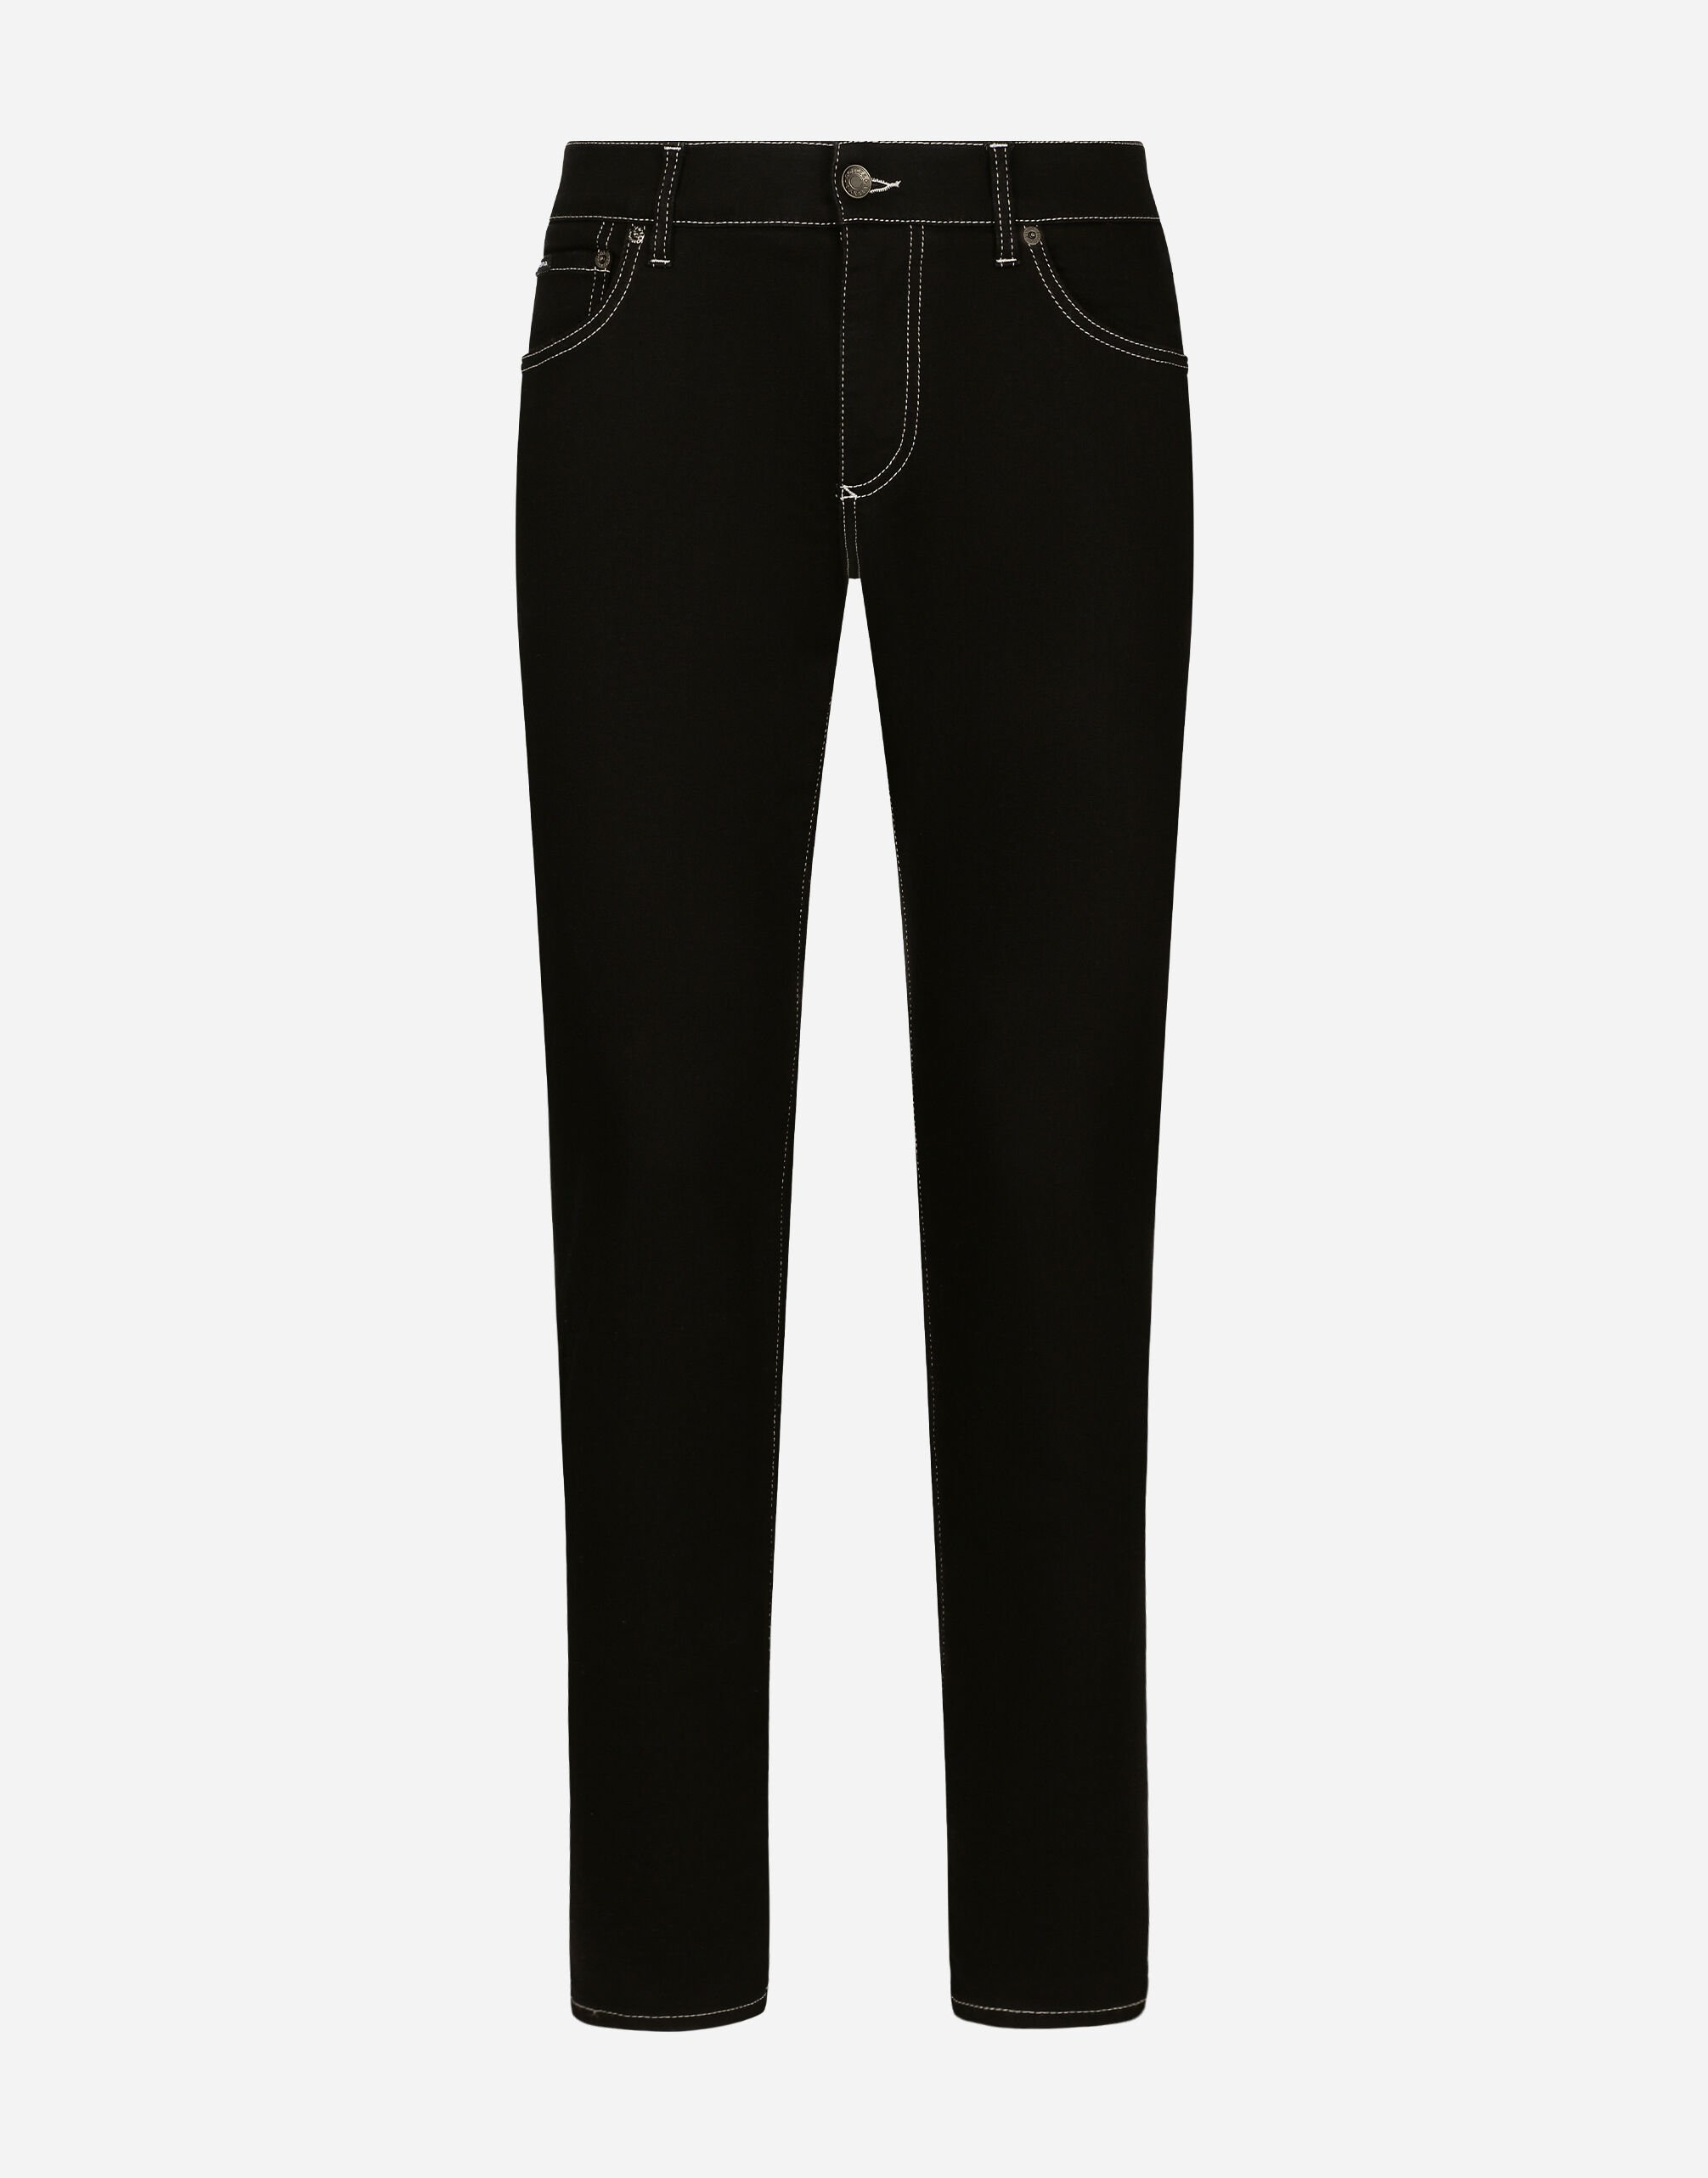 Dolce & Gabbana جينز دنيم مرن أسود بقصة ضيقة متعدد الألوان G5LY0DG8LA5